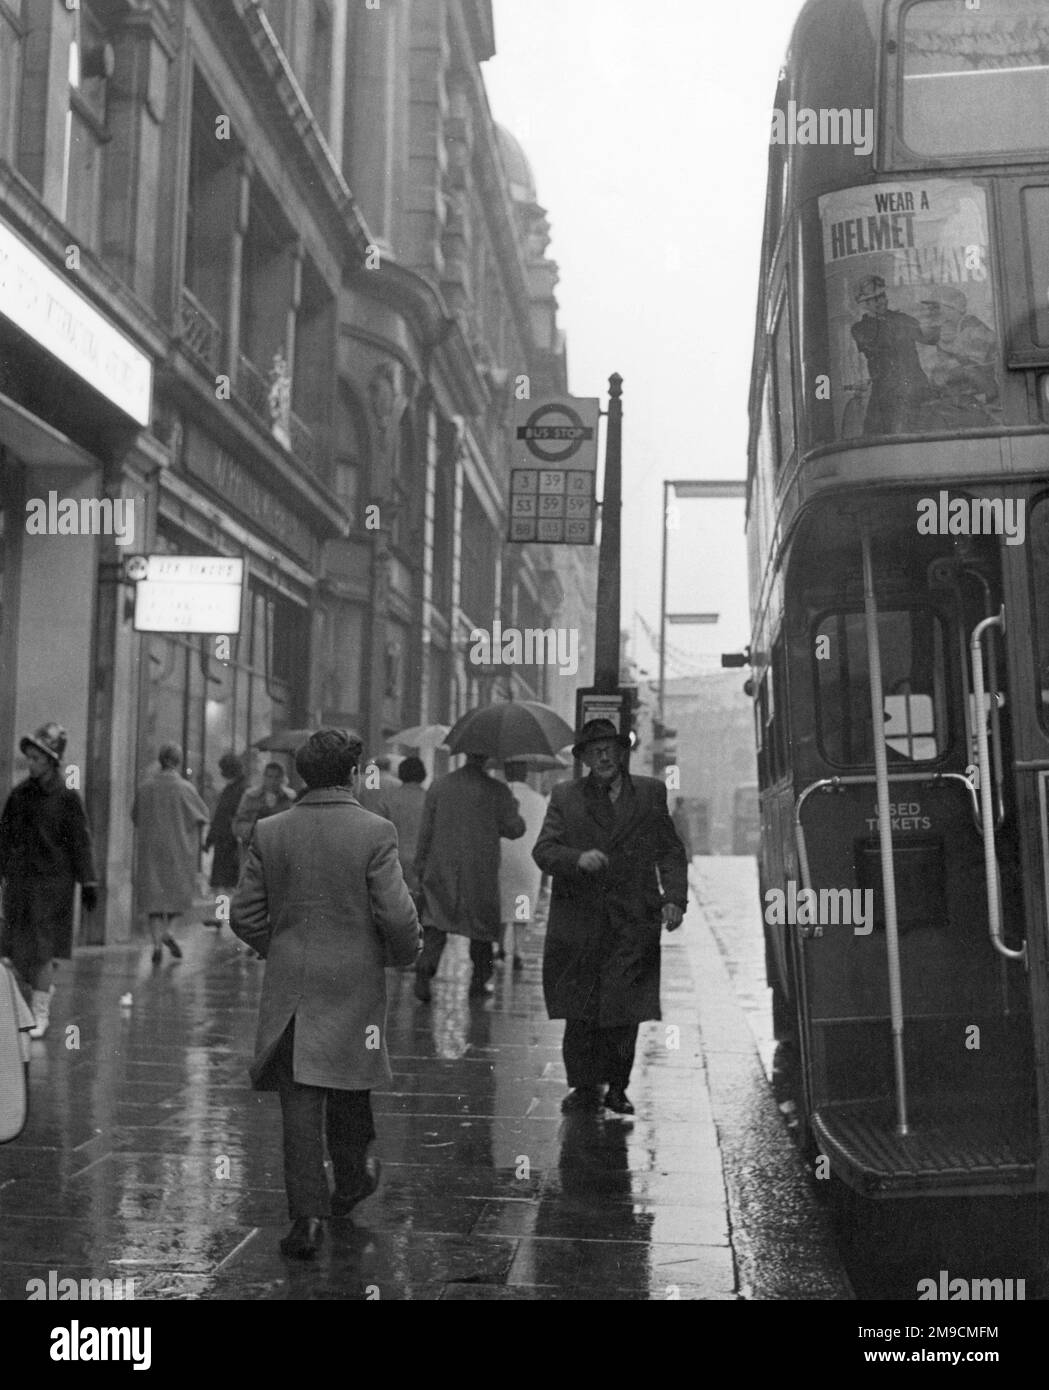 Ce vieil homme, qui attend un arrêt de bus londonien sous la pluie, semble être sur le point de sauter à bord du bus Routemaster qui vient d'arriver. Banque D'Images